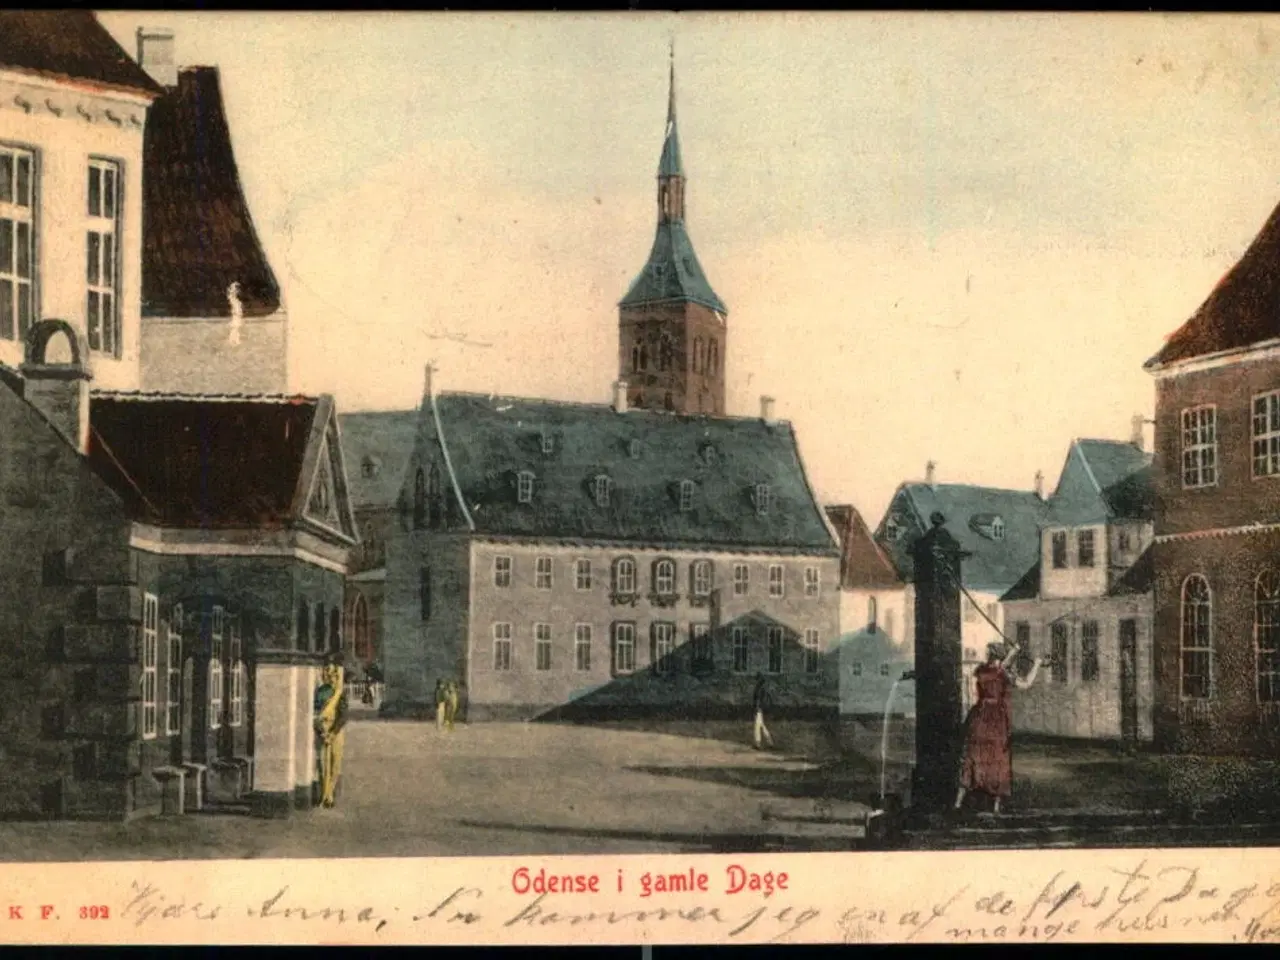 Billede 1 - Odense i gamle Dage - W.K.F. 392 - Brugt